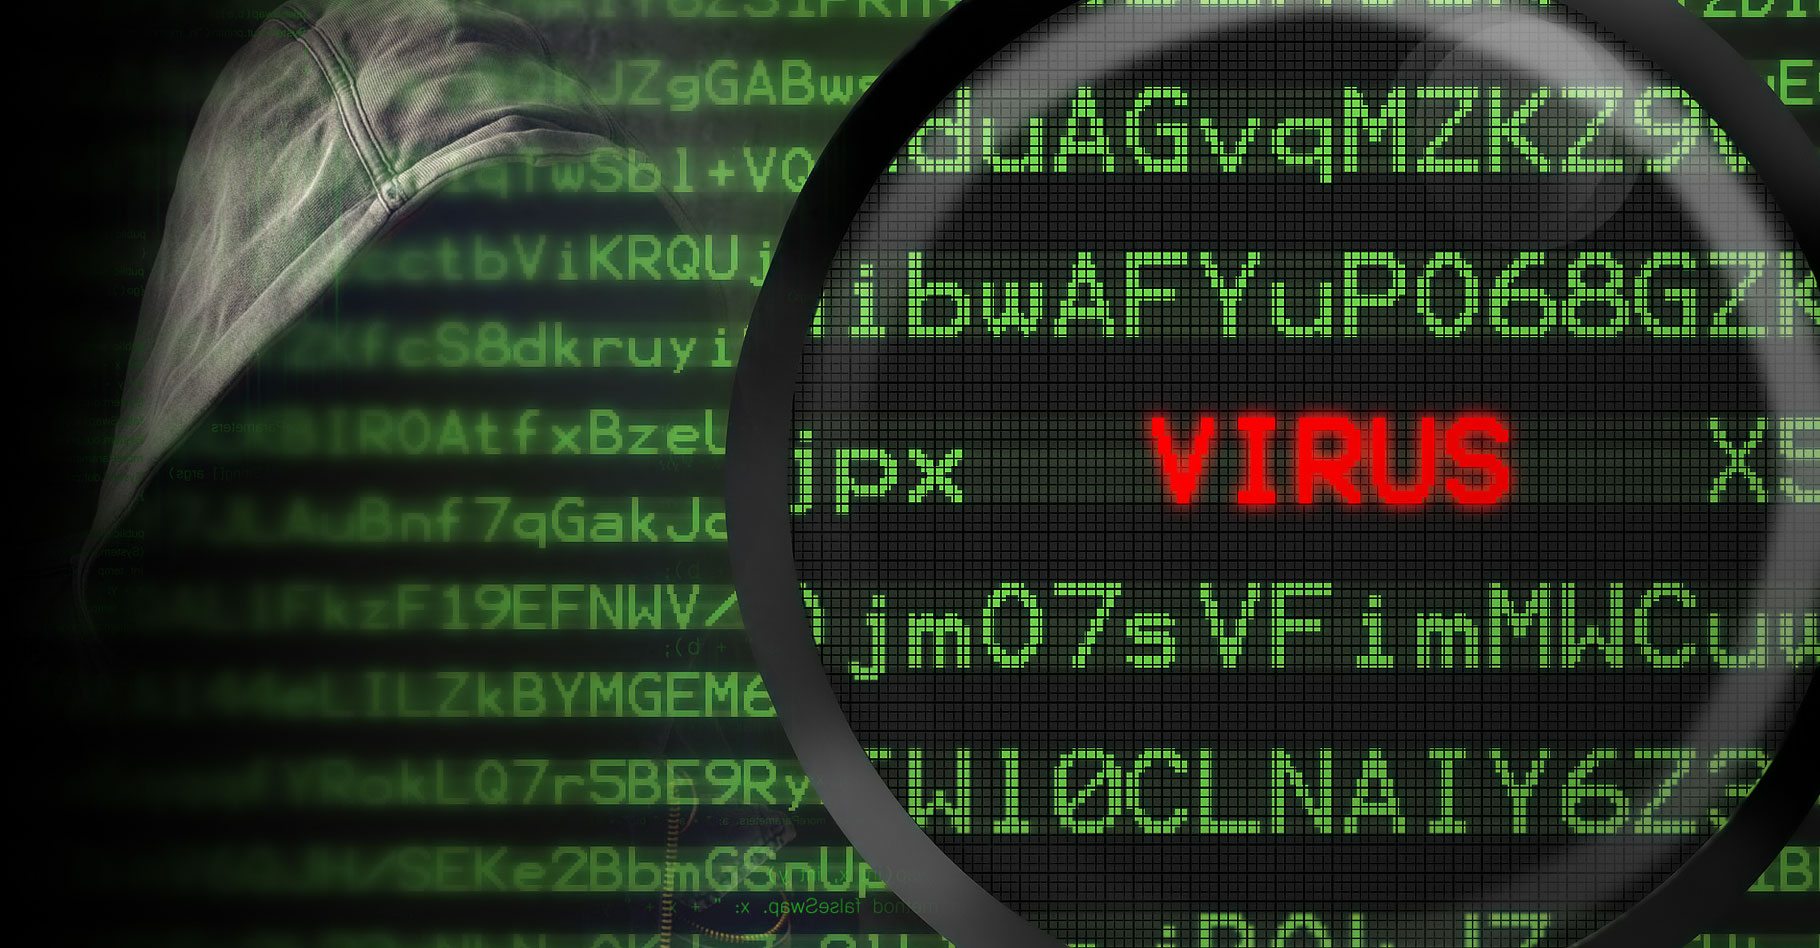 Virus informatiques qui sont-ils ? © www.elbpresse.de - CC BY-SA 4.0